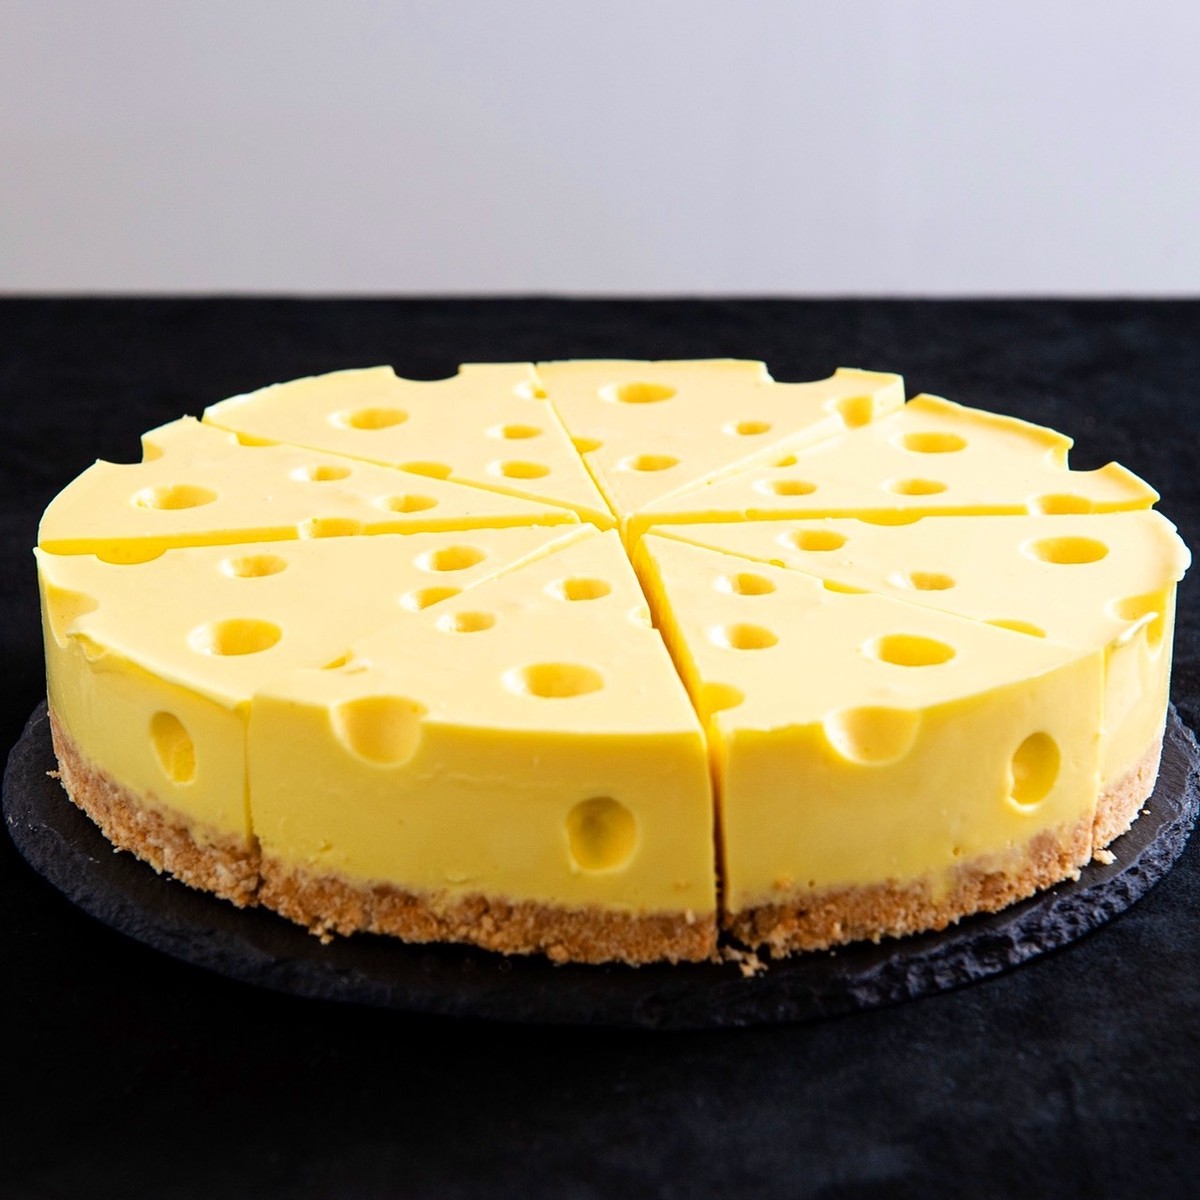 6号サイズ ケサパサのチーズみたいなチーズケーキ 冷凍発送 Espesso Bar ケサランパサラン